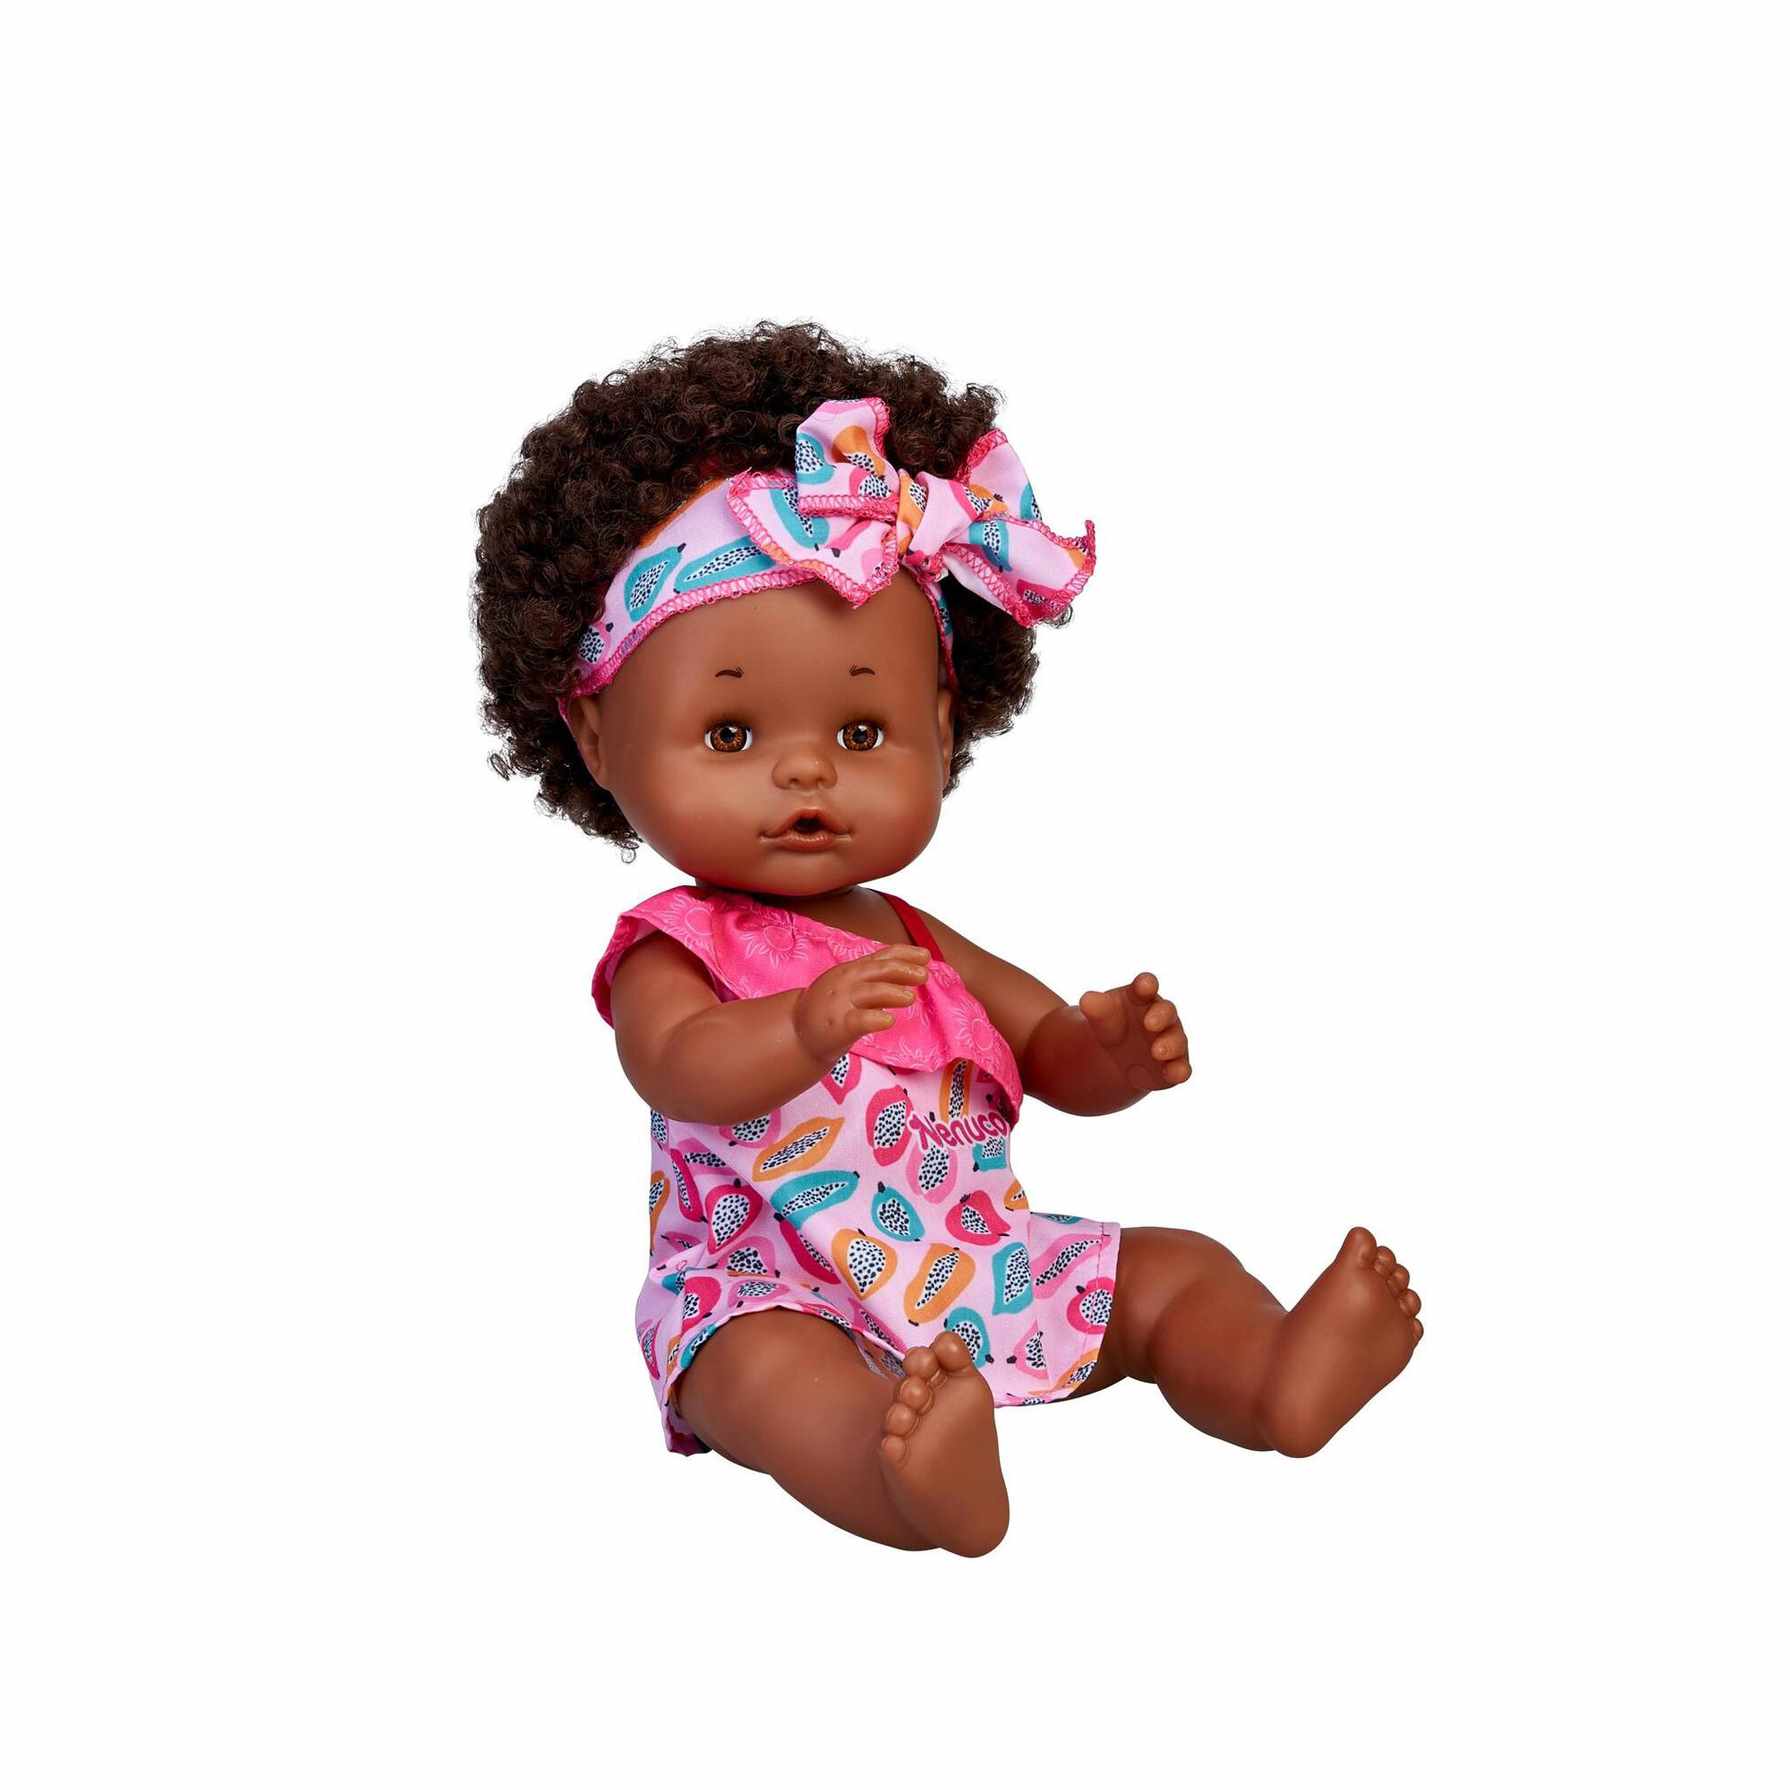 Comprar Nenucos del Mundo Muñeca Africana | Toy